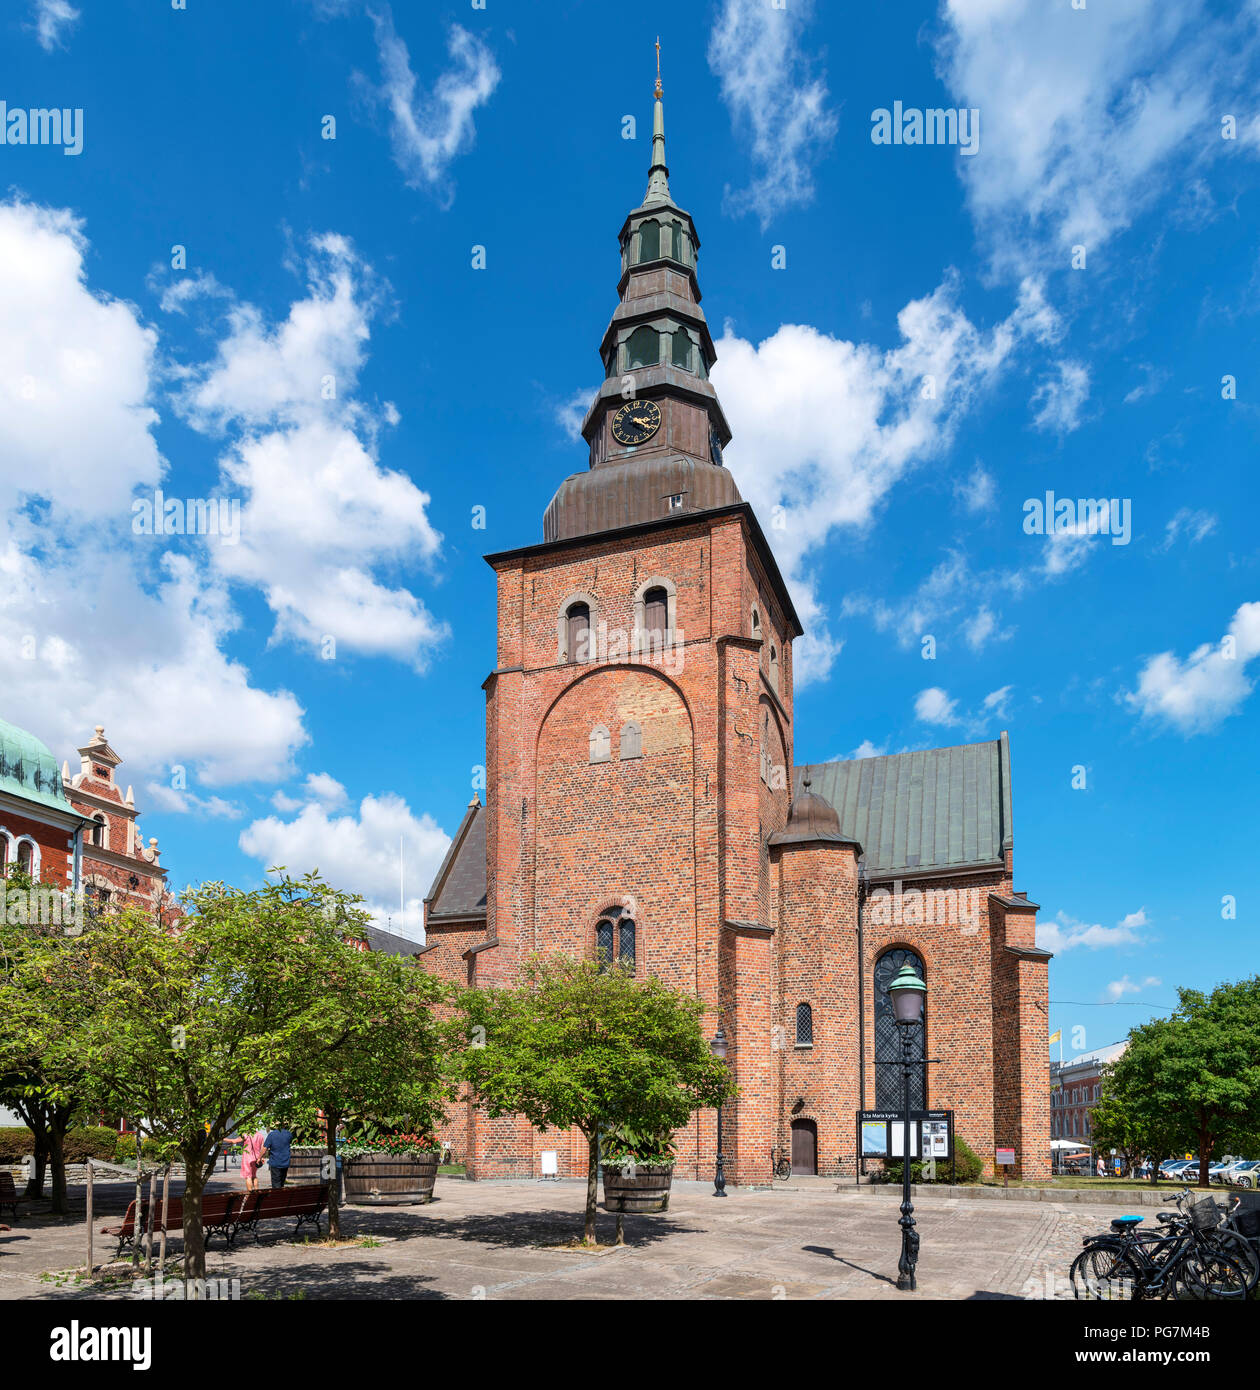 L'église St Mary (Sankta Maria Kyrka) dans la vieille ville de marché de Ystad, Scania, Suède Banque D'Images